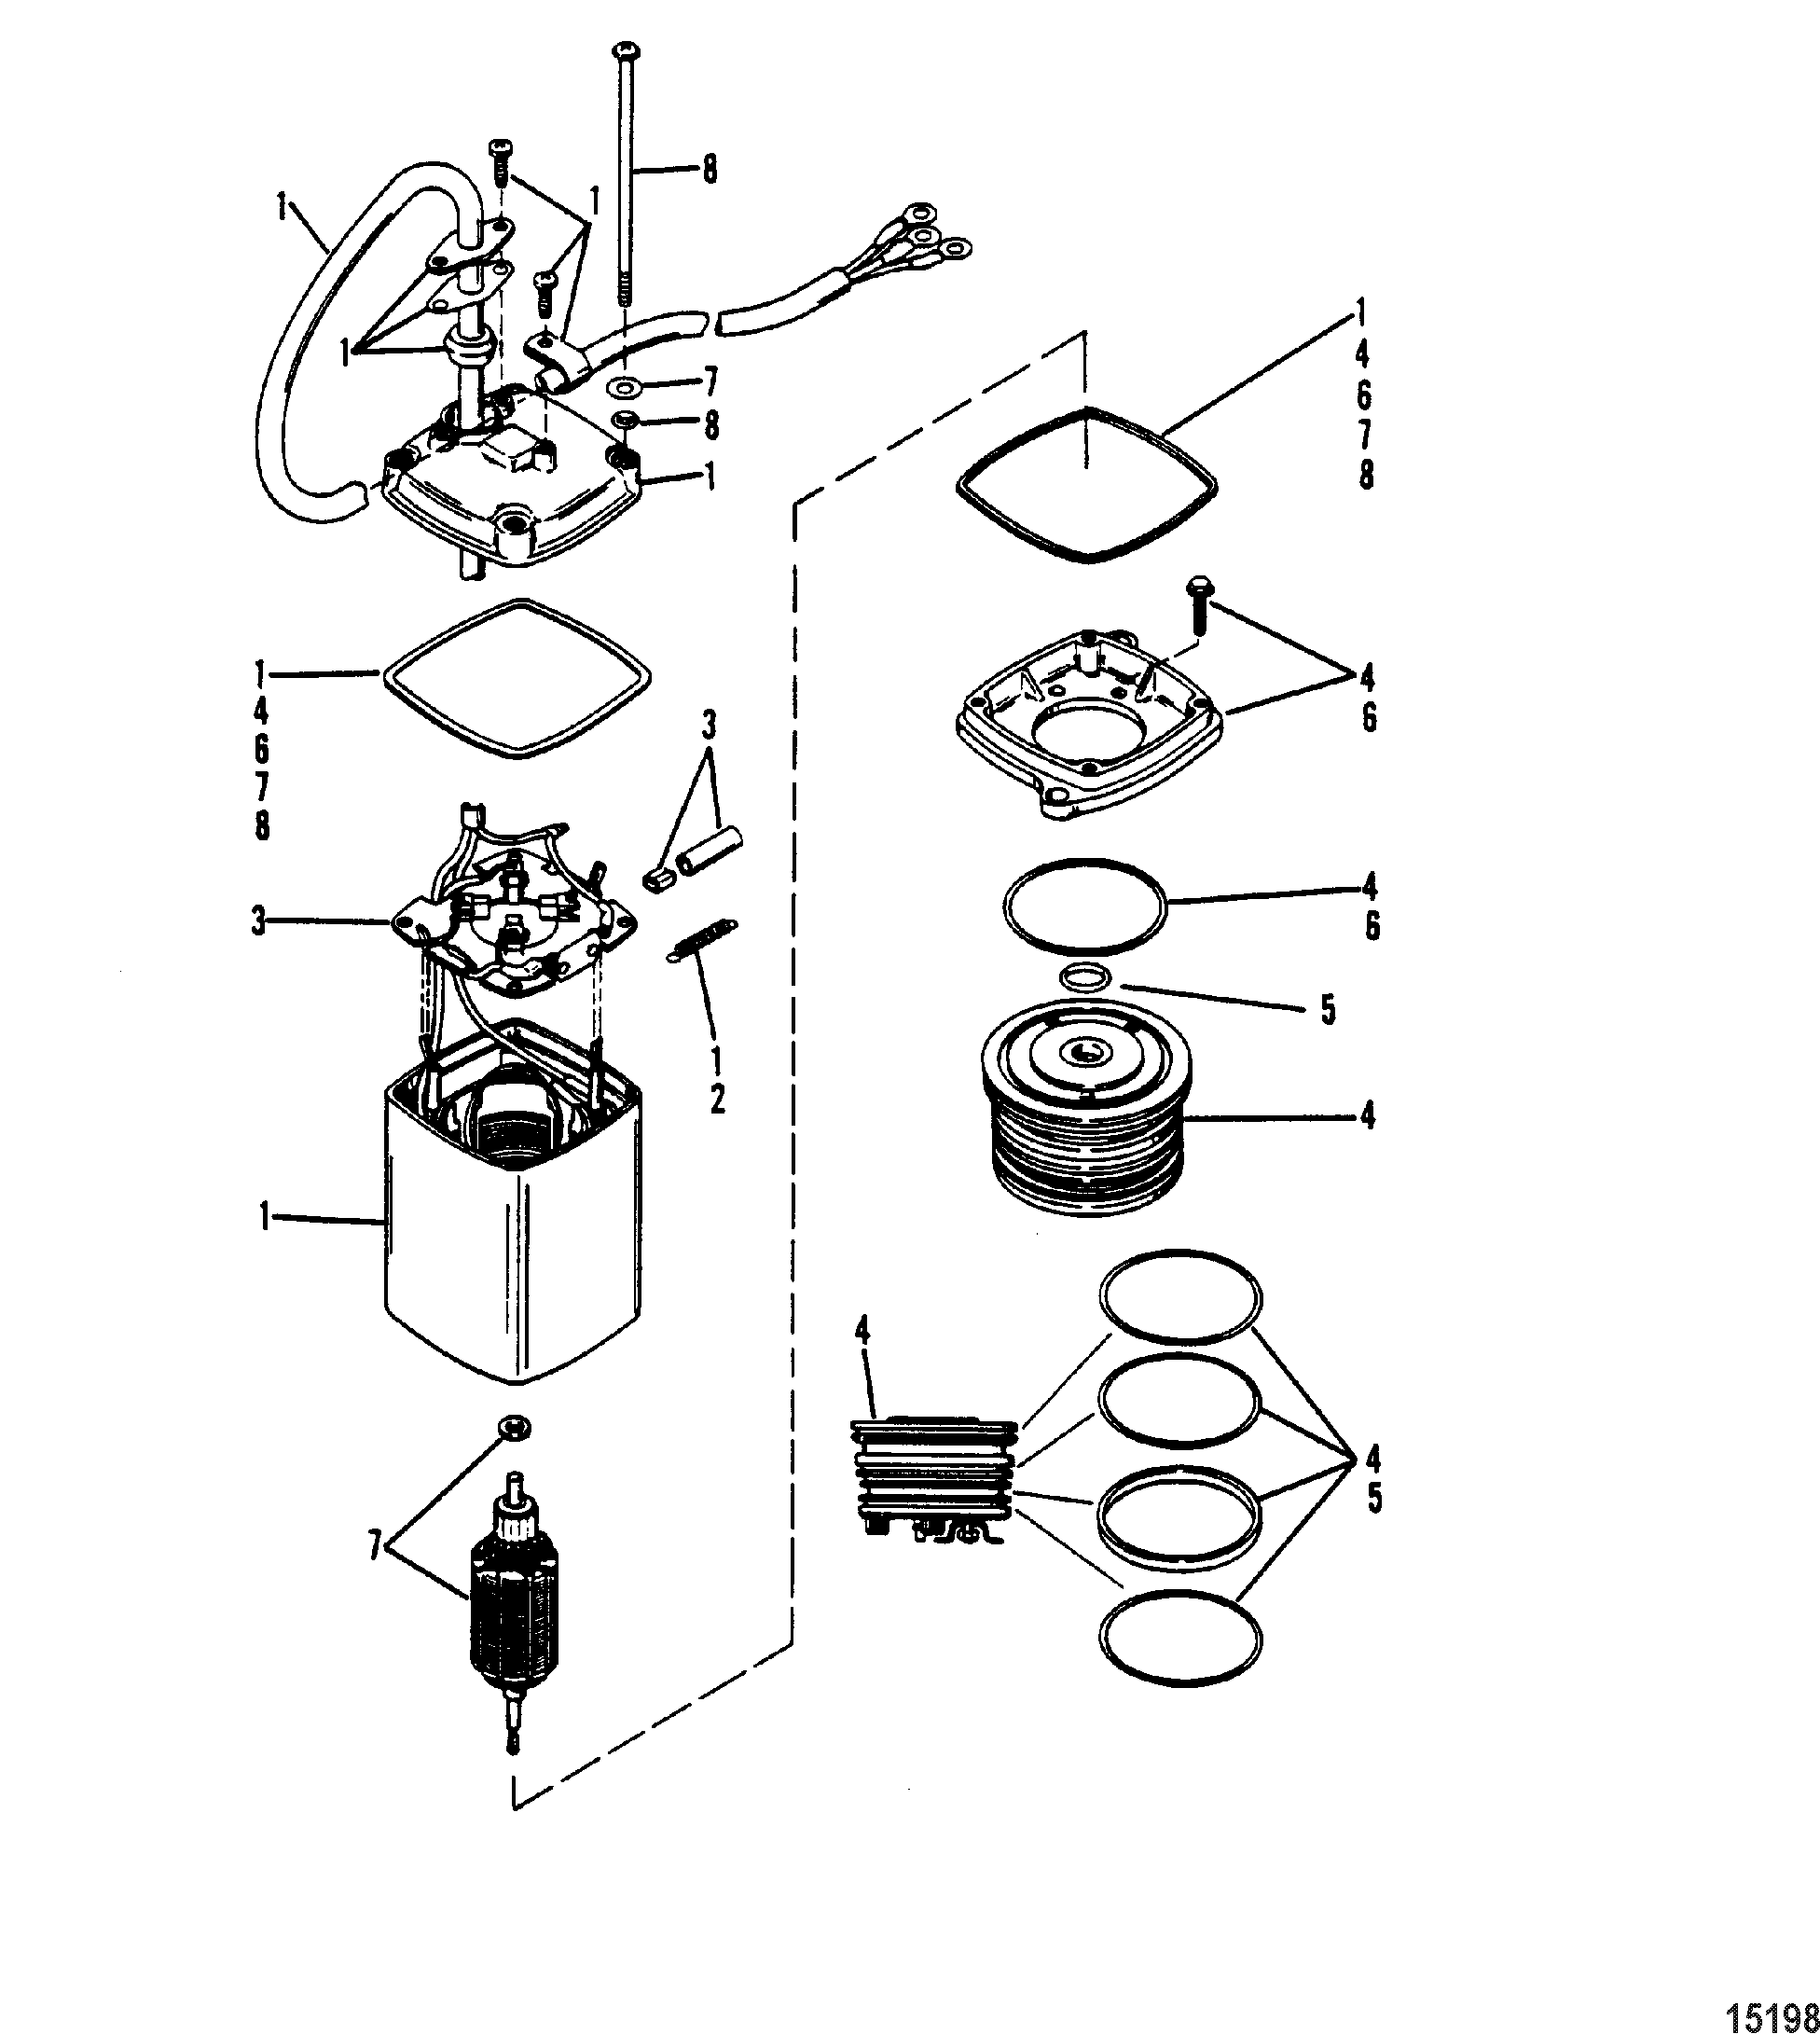 Power Trim Pump(Eaton Rectangular Motor-0C159199 and Below)